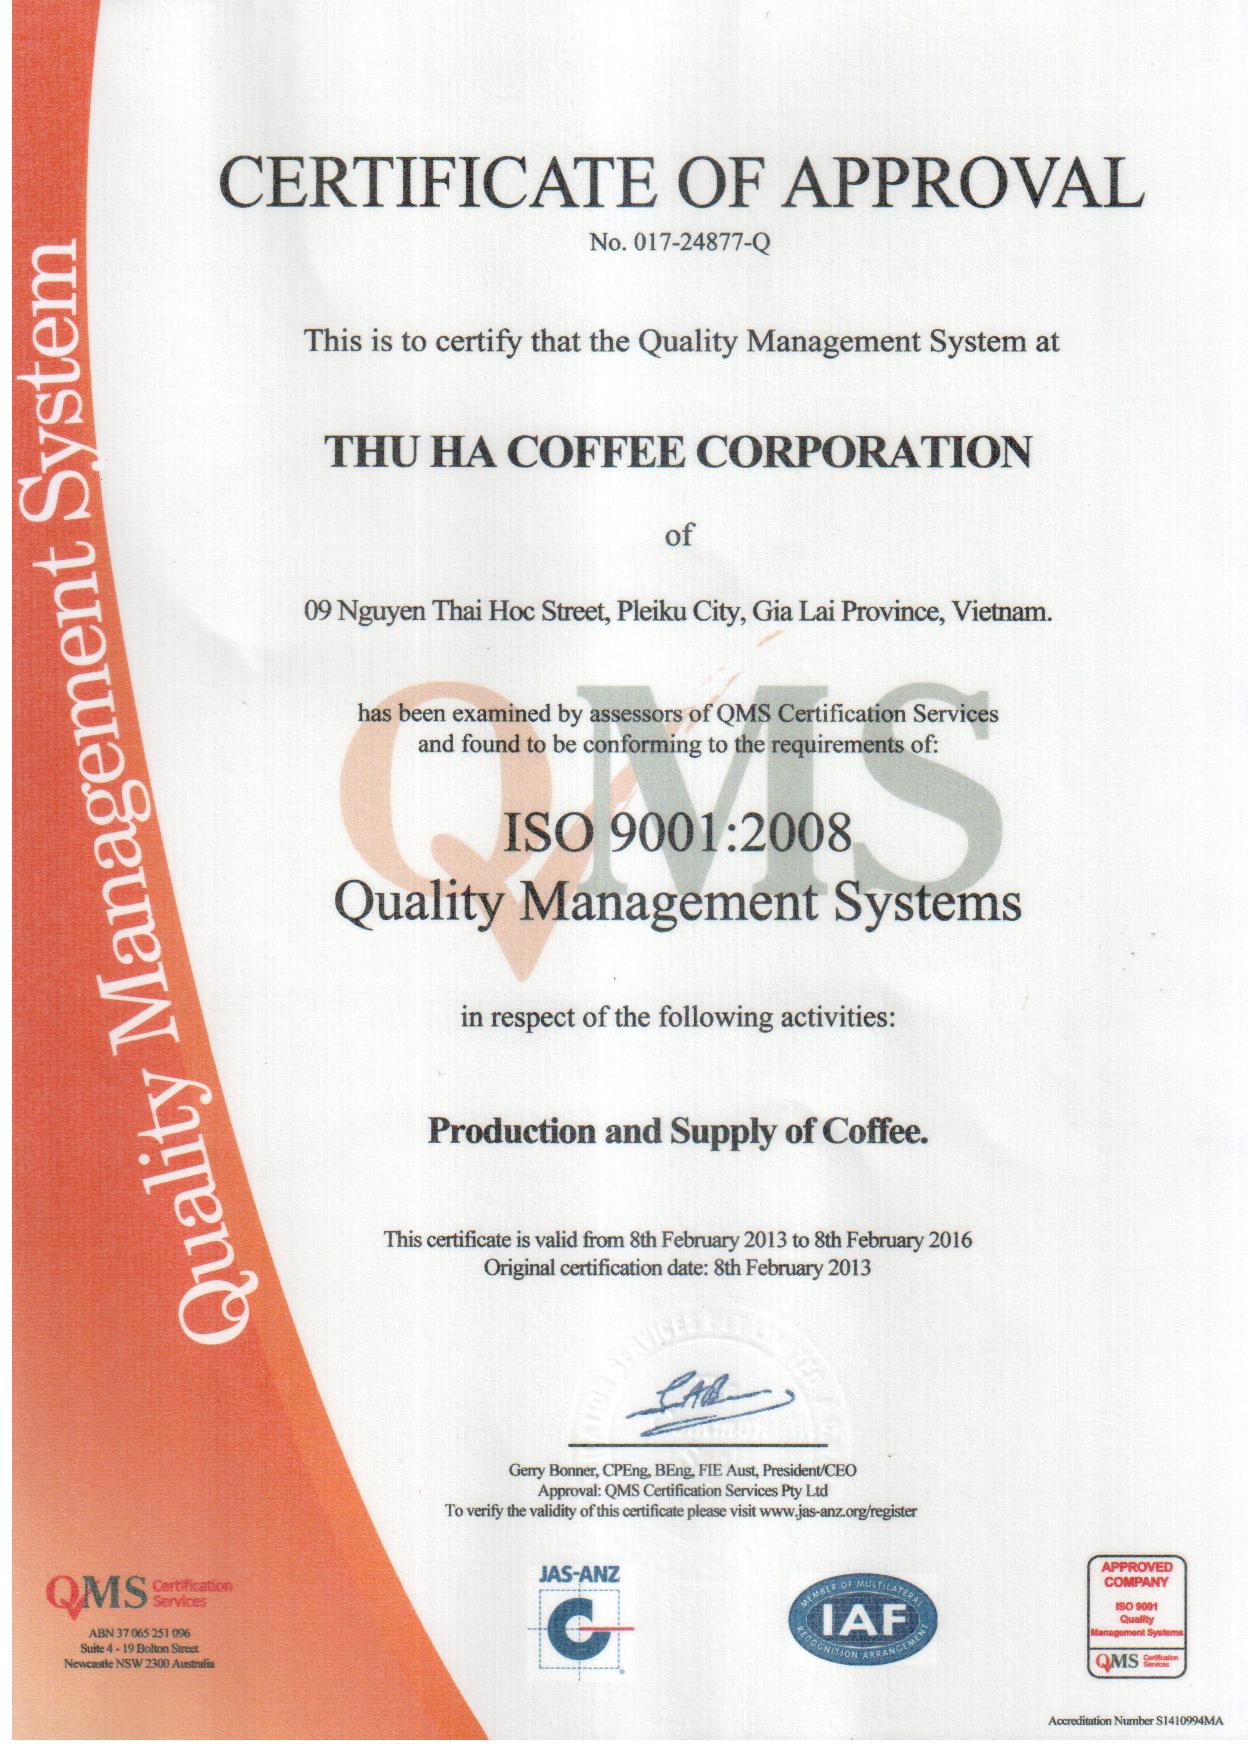 ISO 9001:2008 - Cà Phê Thu Hà - Công Ty Cổ Phần Cà Phê Thu Hà